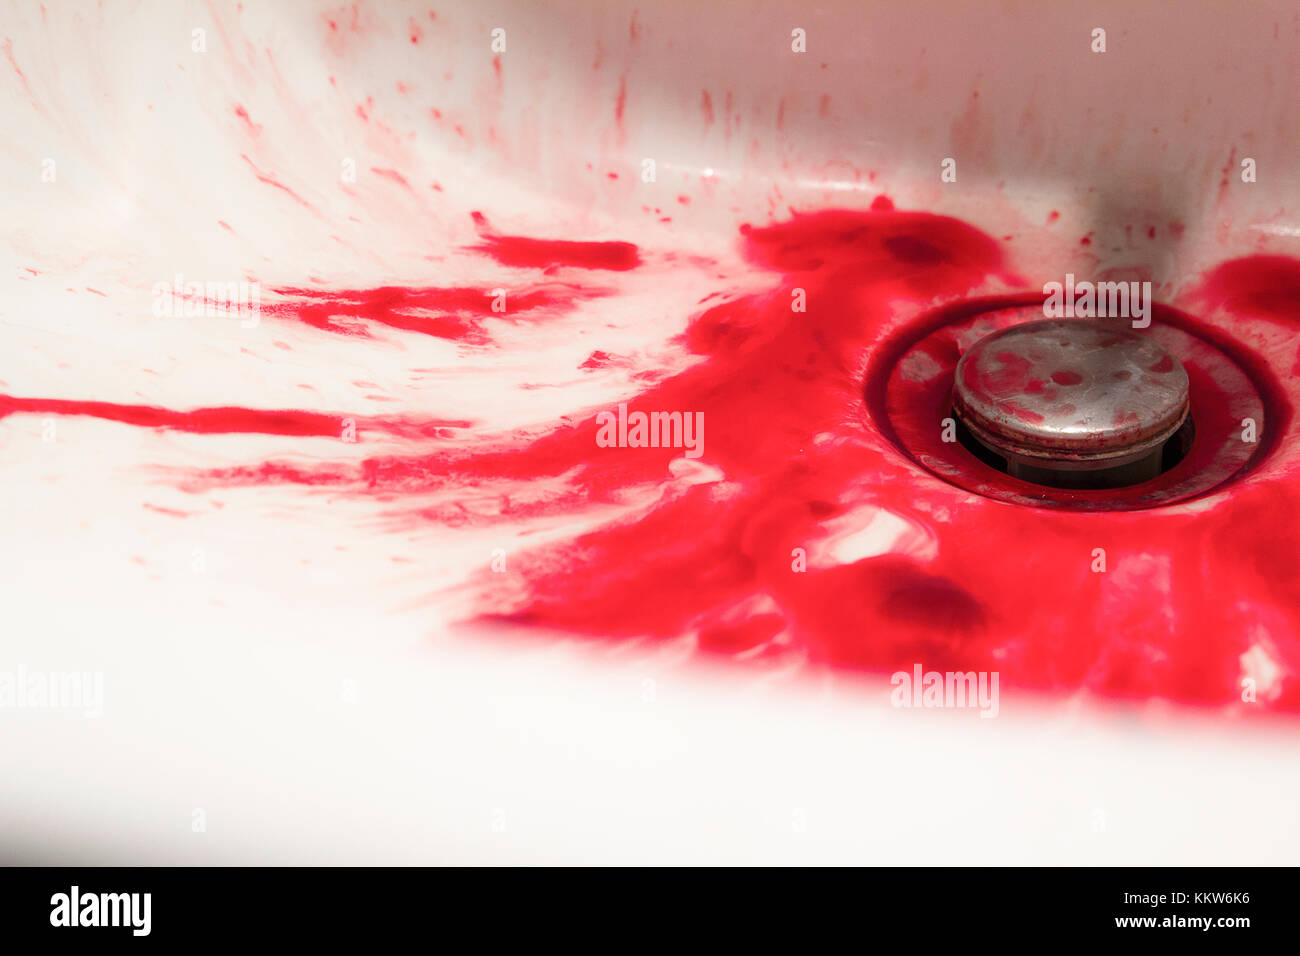 Une baignoire pleine de sang suggère un événement tragique, probablement un suicide. Banque D'Images